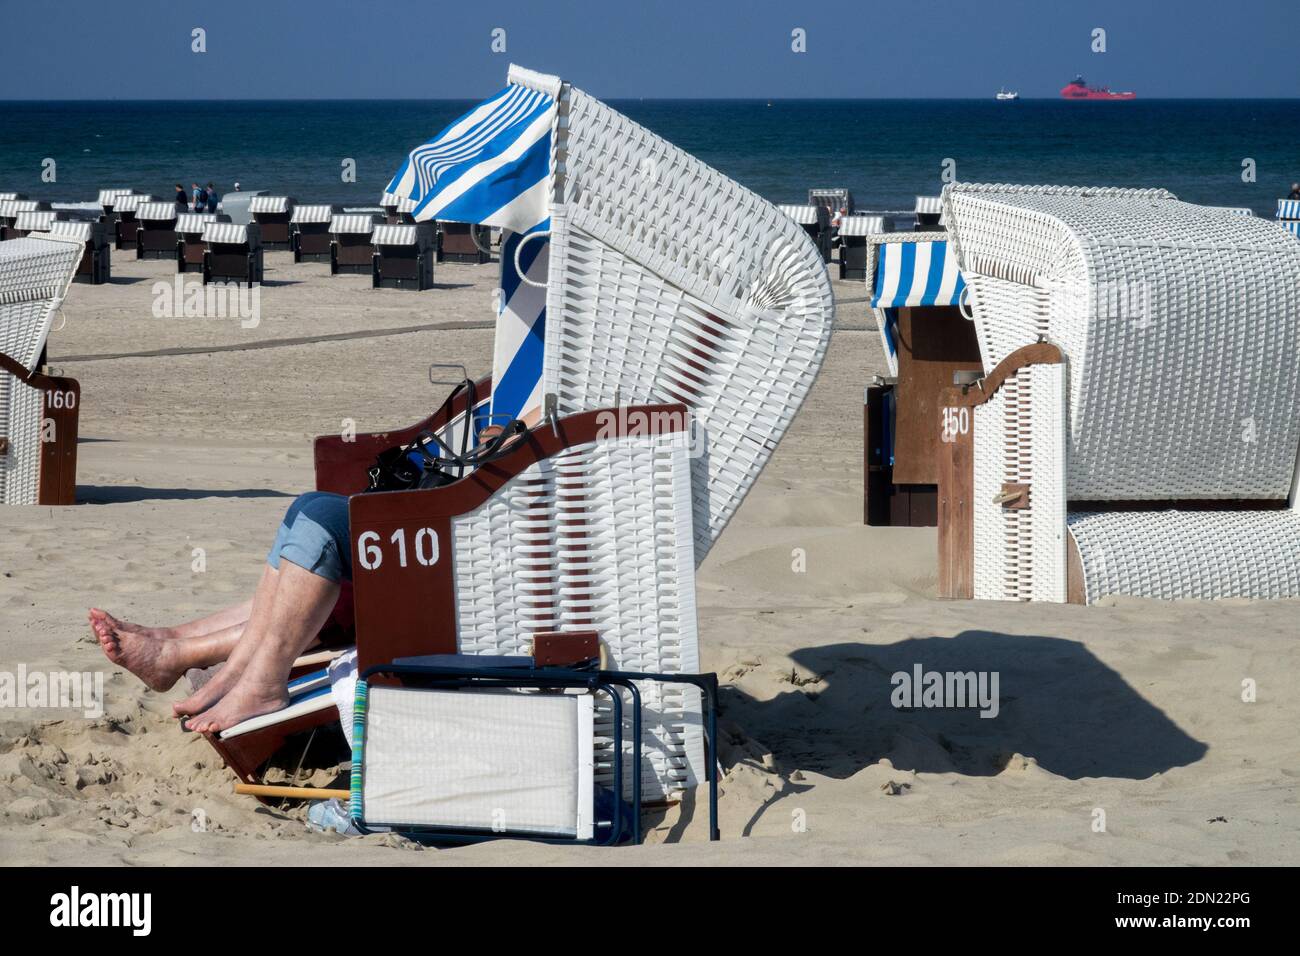 Le persone che prendono il sole sulla spiaggia di sabbia e sono protette dal Vento nella sedia da spiaggia in vimini Germania Mar Baltico Foto Stock